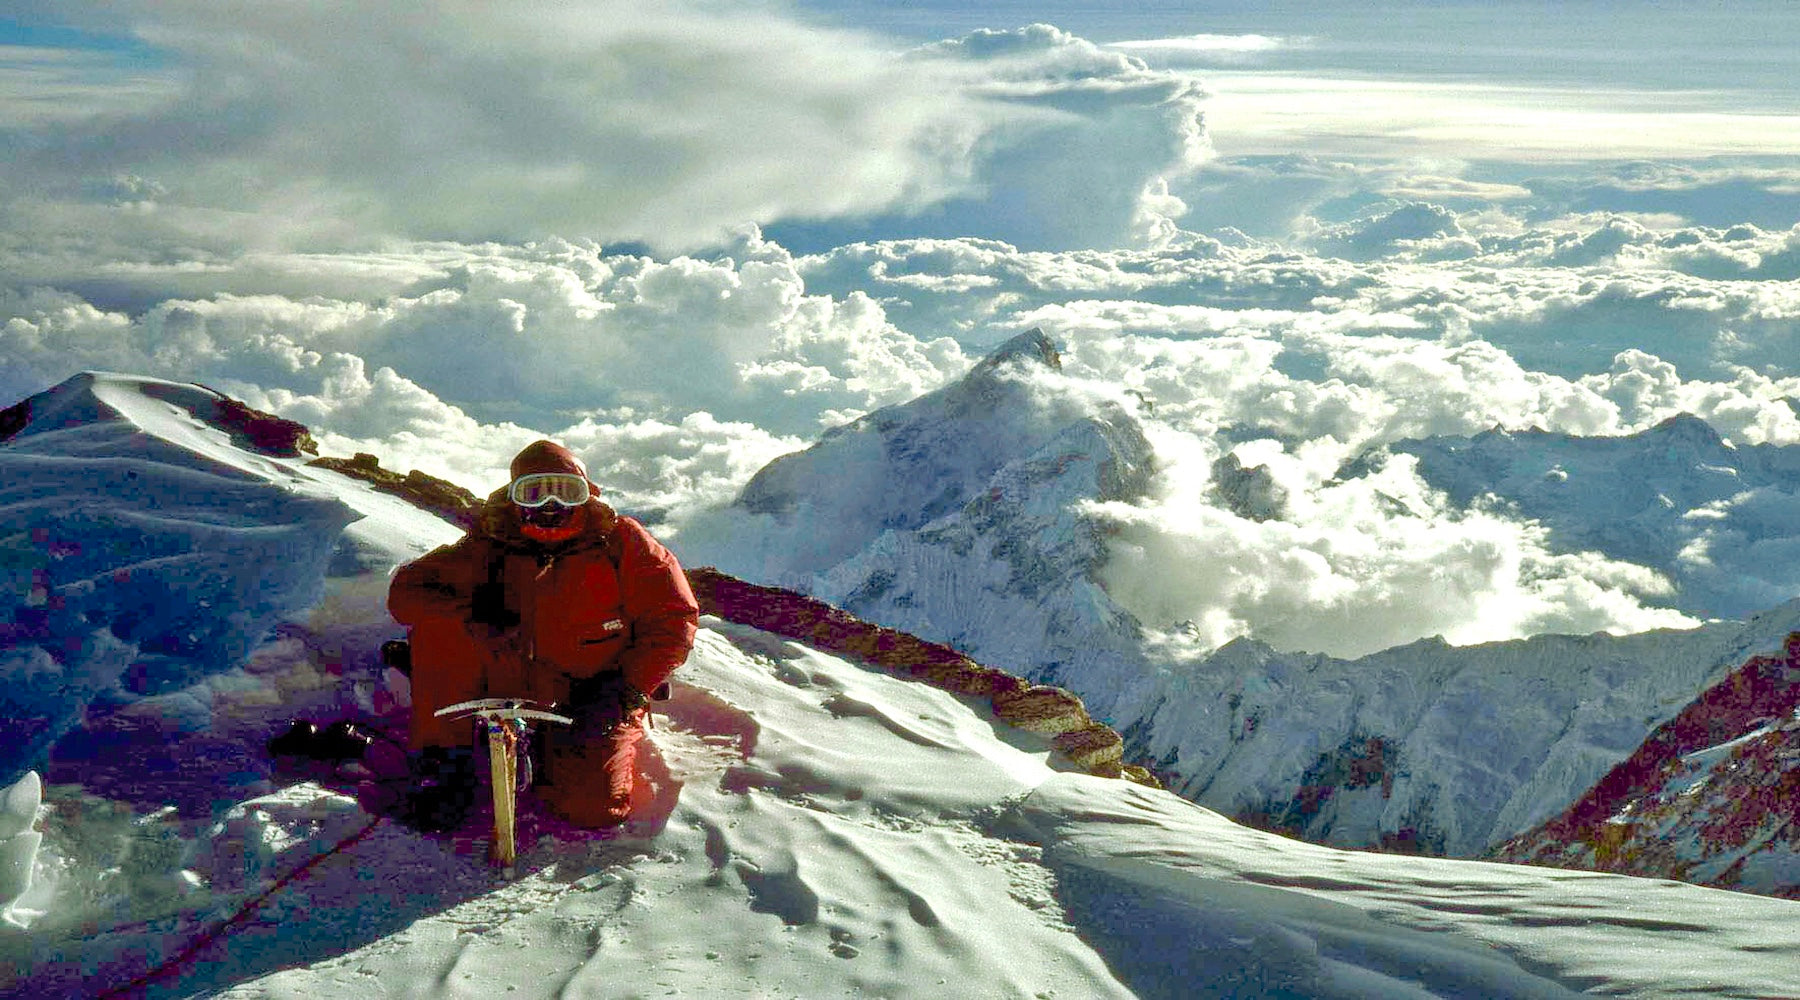 Doug Scott taking in the view just below the summit of Kangchenjunga